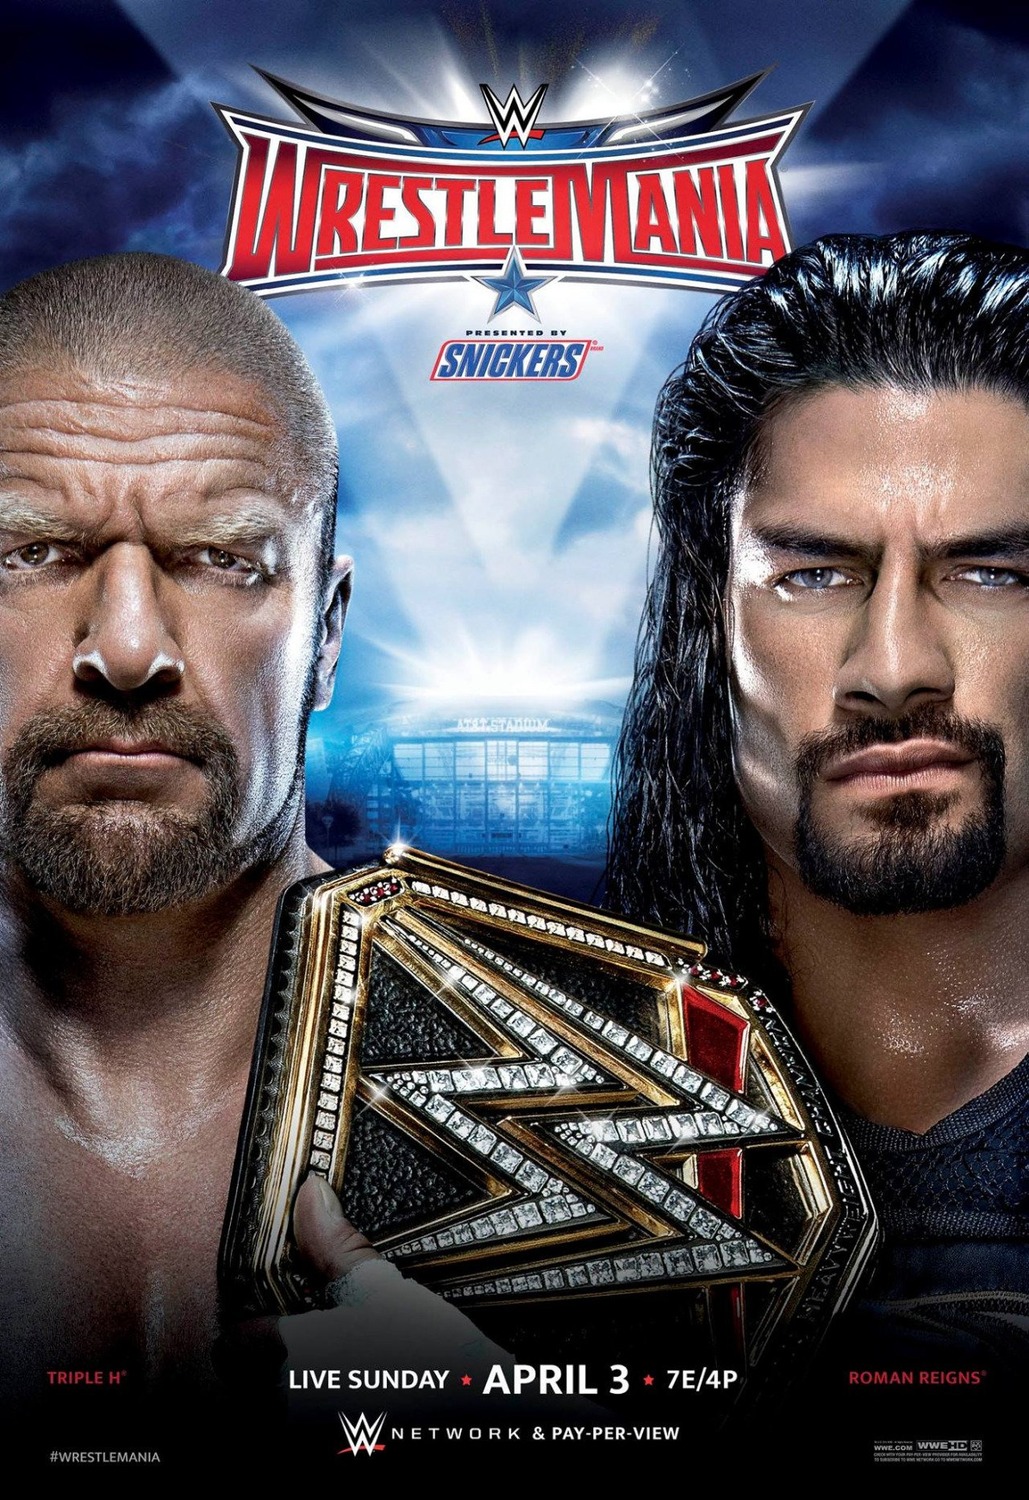 WWE Wrestlemania (11 of 16) Extra Large Movie Poster Image IMP Awards